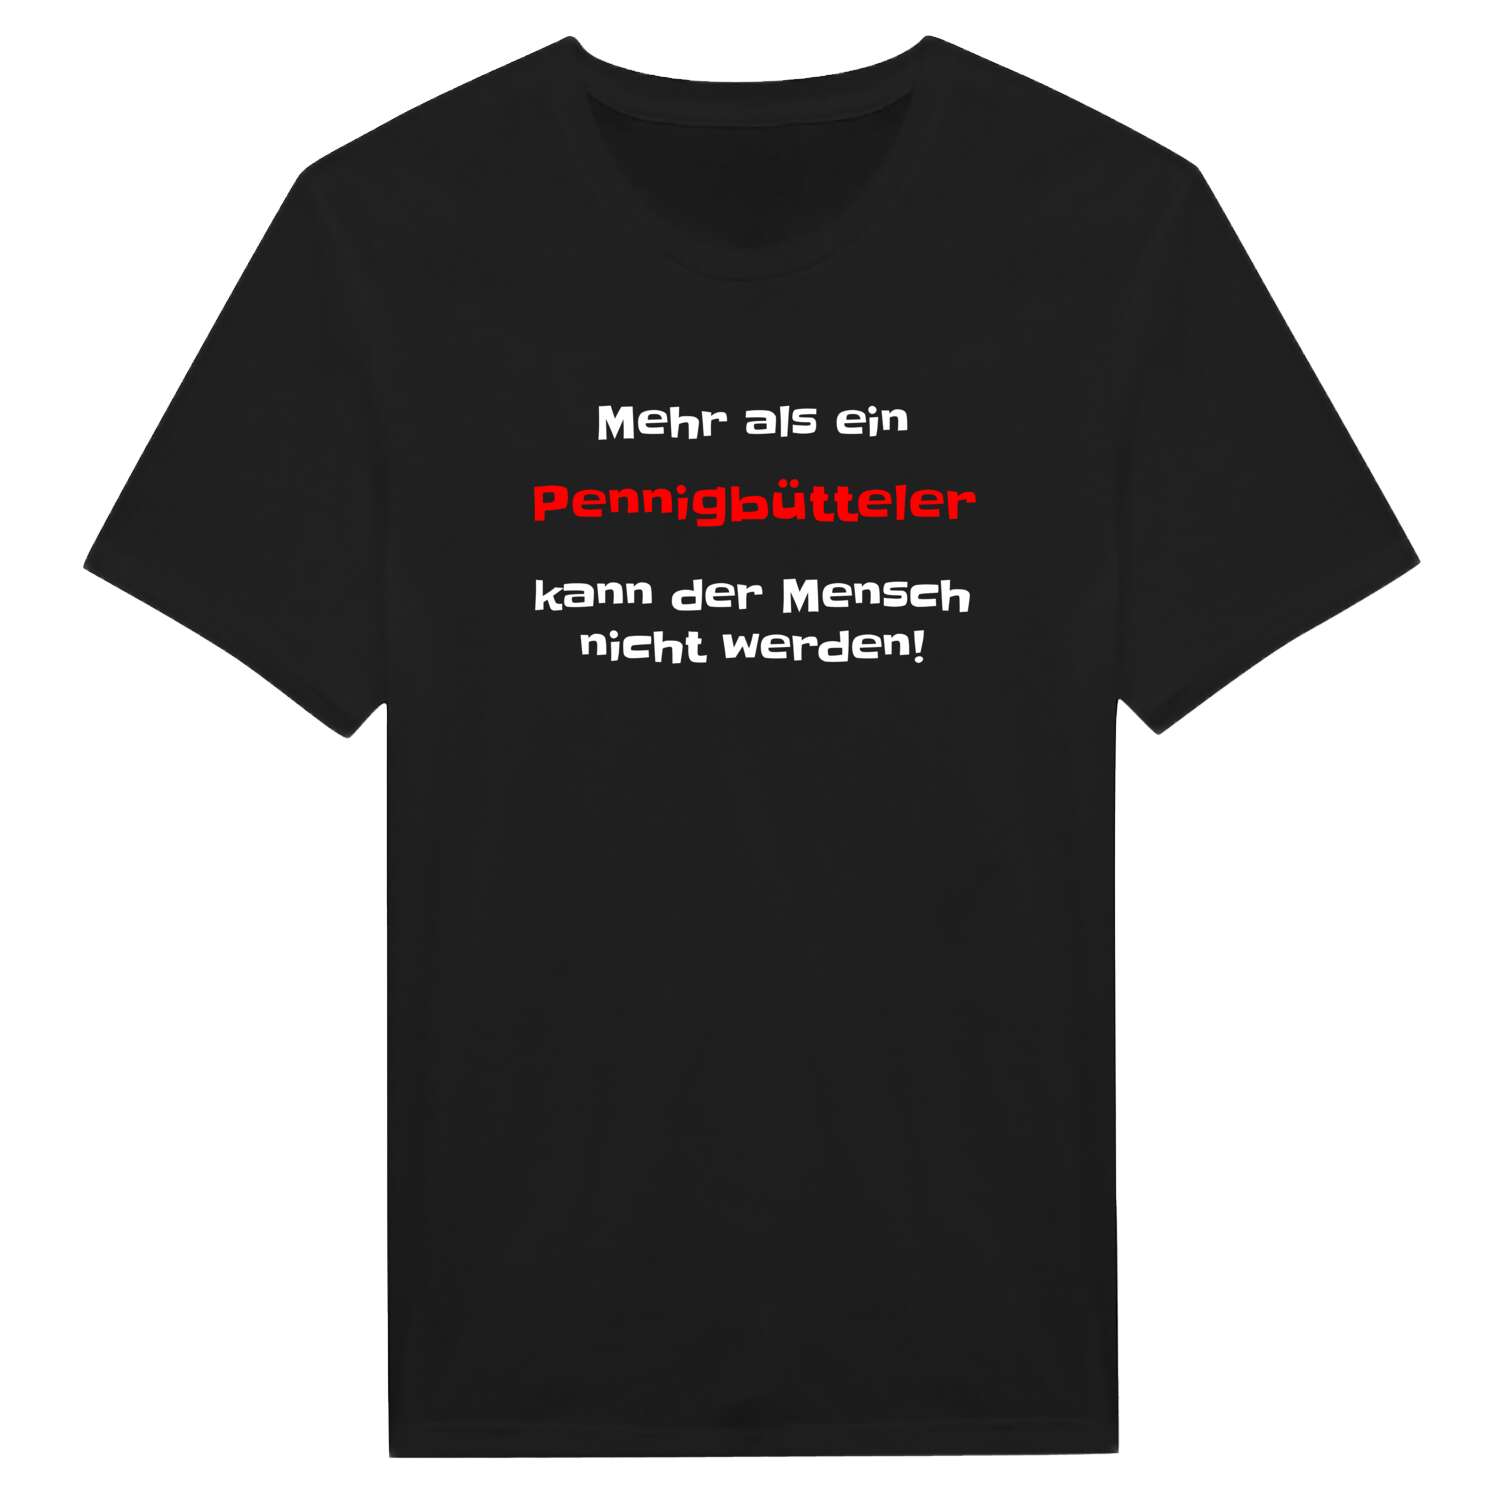 Pennigbüttel T-Shirt »Mehr als ein«